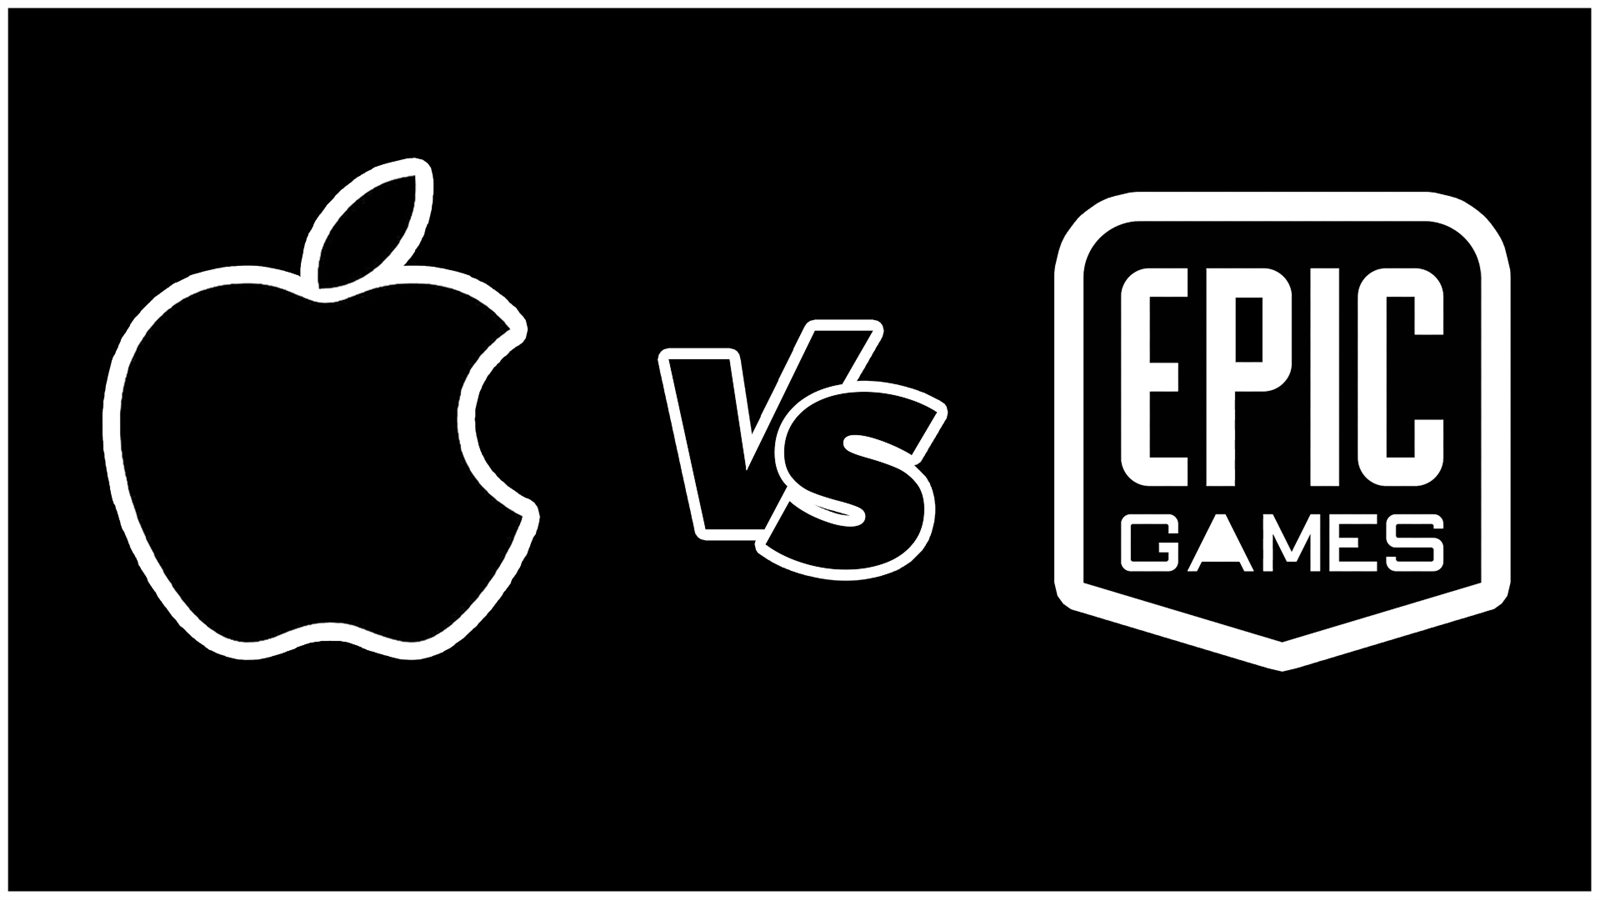 Epic vs apple